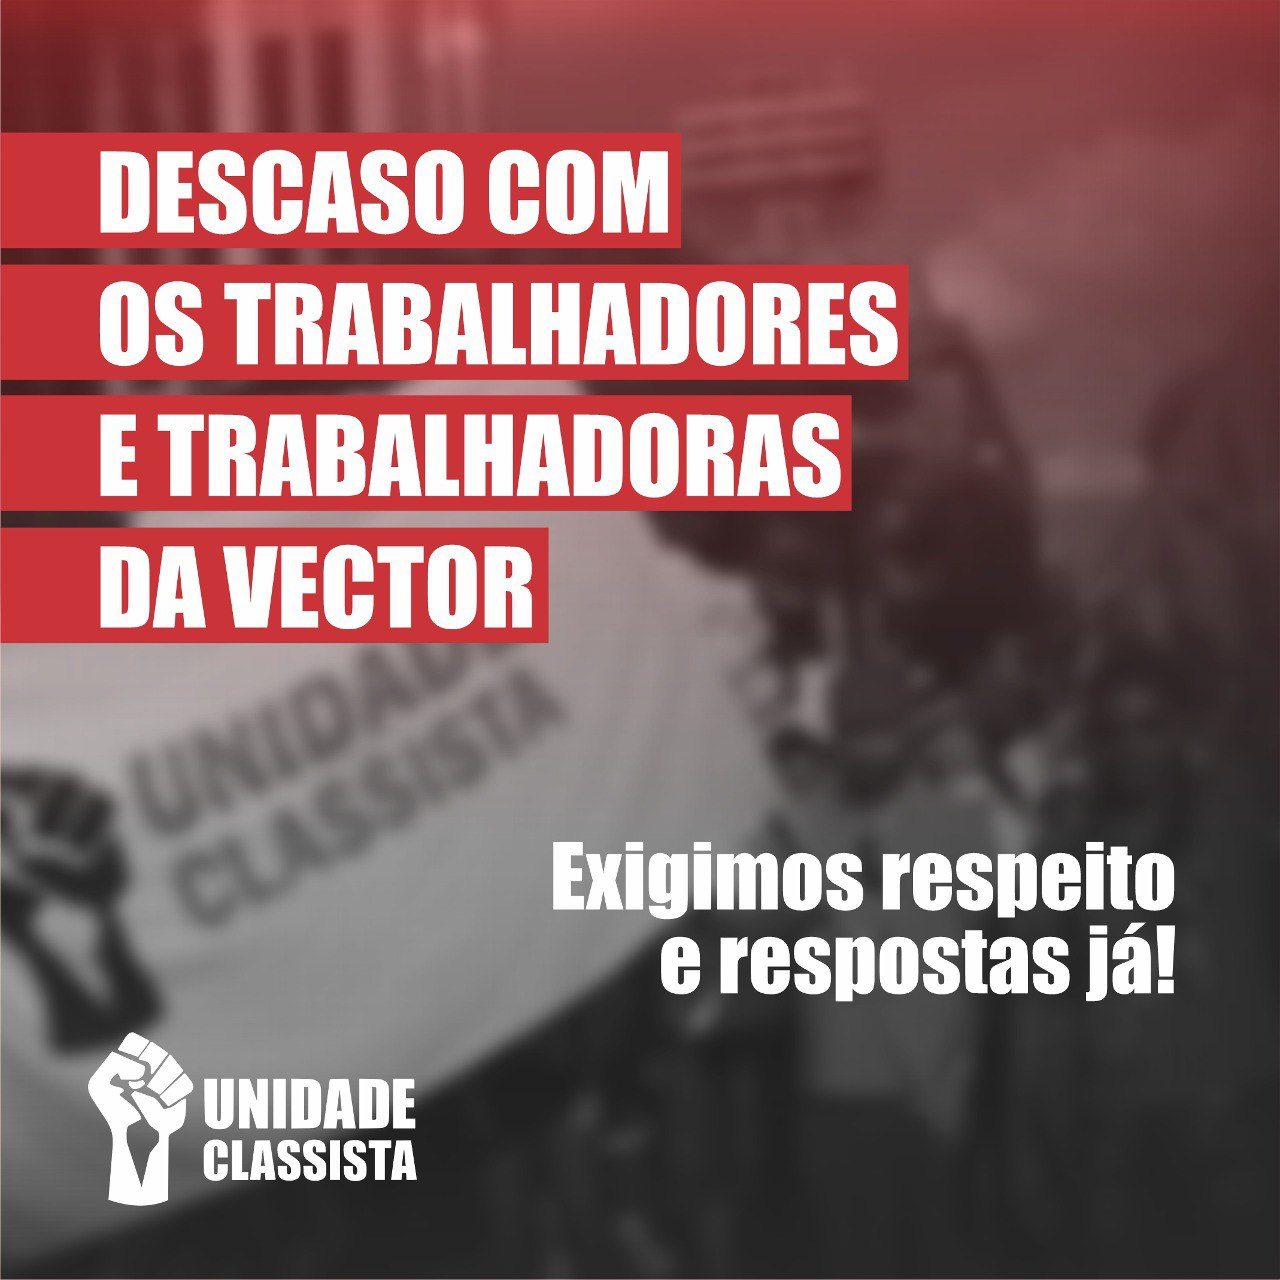 DESCASO COM OS TRABALHADORES E TRABALHADORAS DA VECTOR!